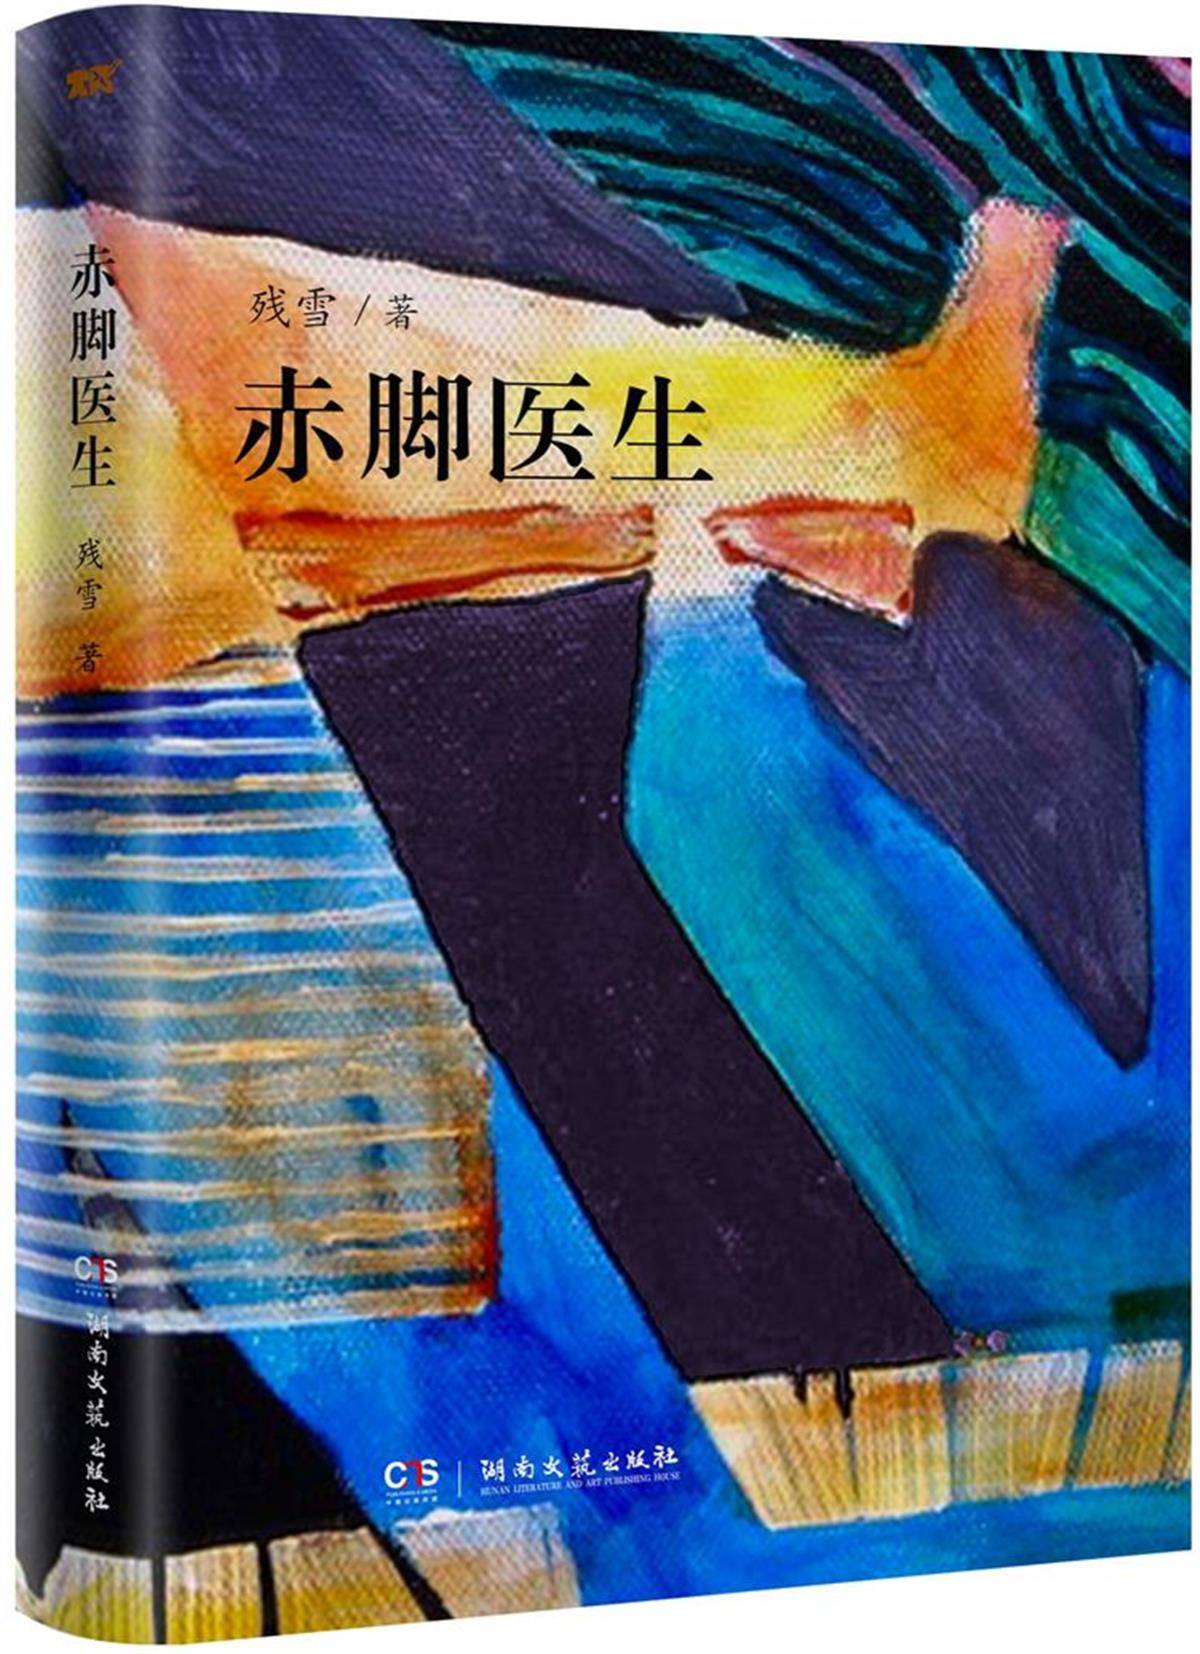 谜镜神笔 安卓版下载:诺贝尔文学奖将揭晓，中国作家残雪跃居“赔率榜”第一名